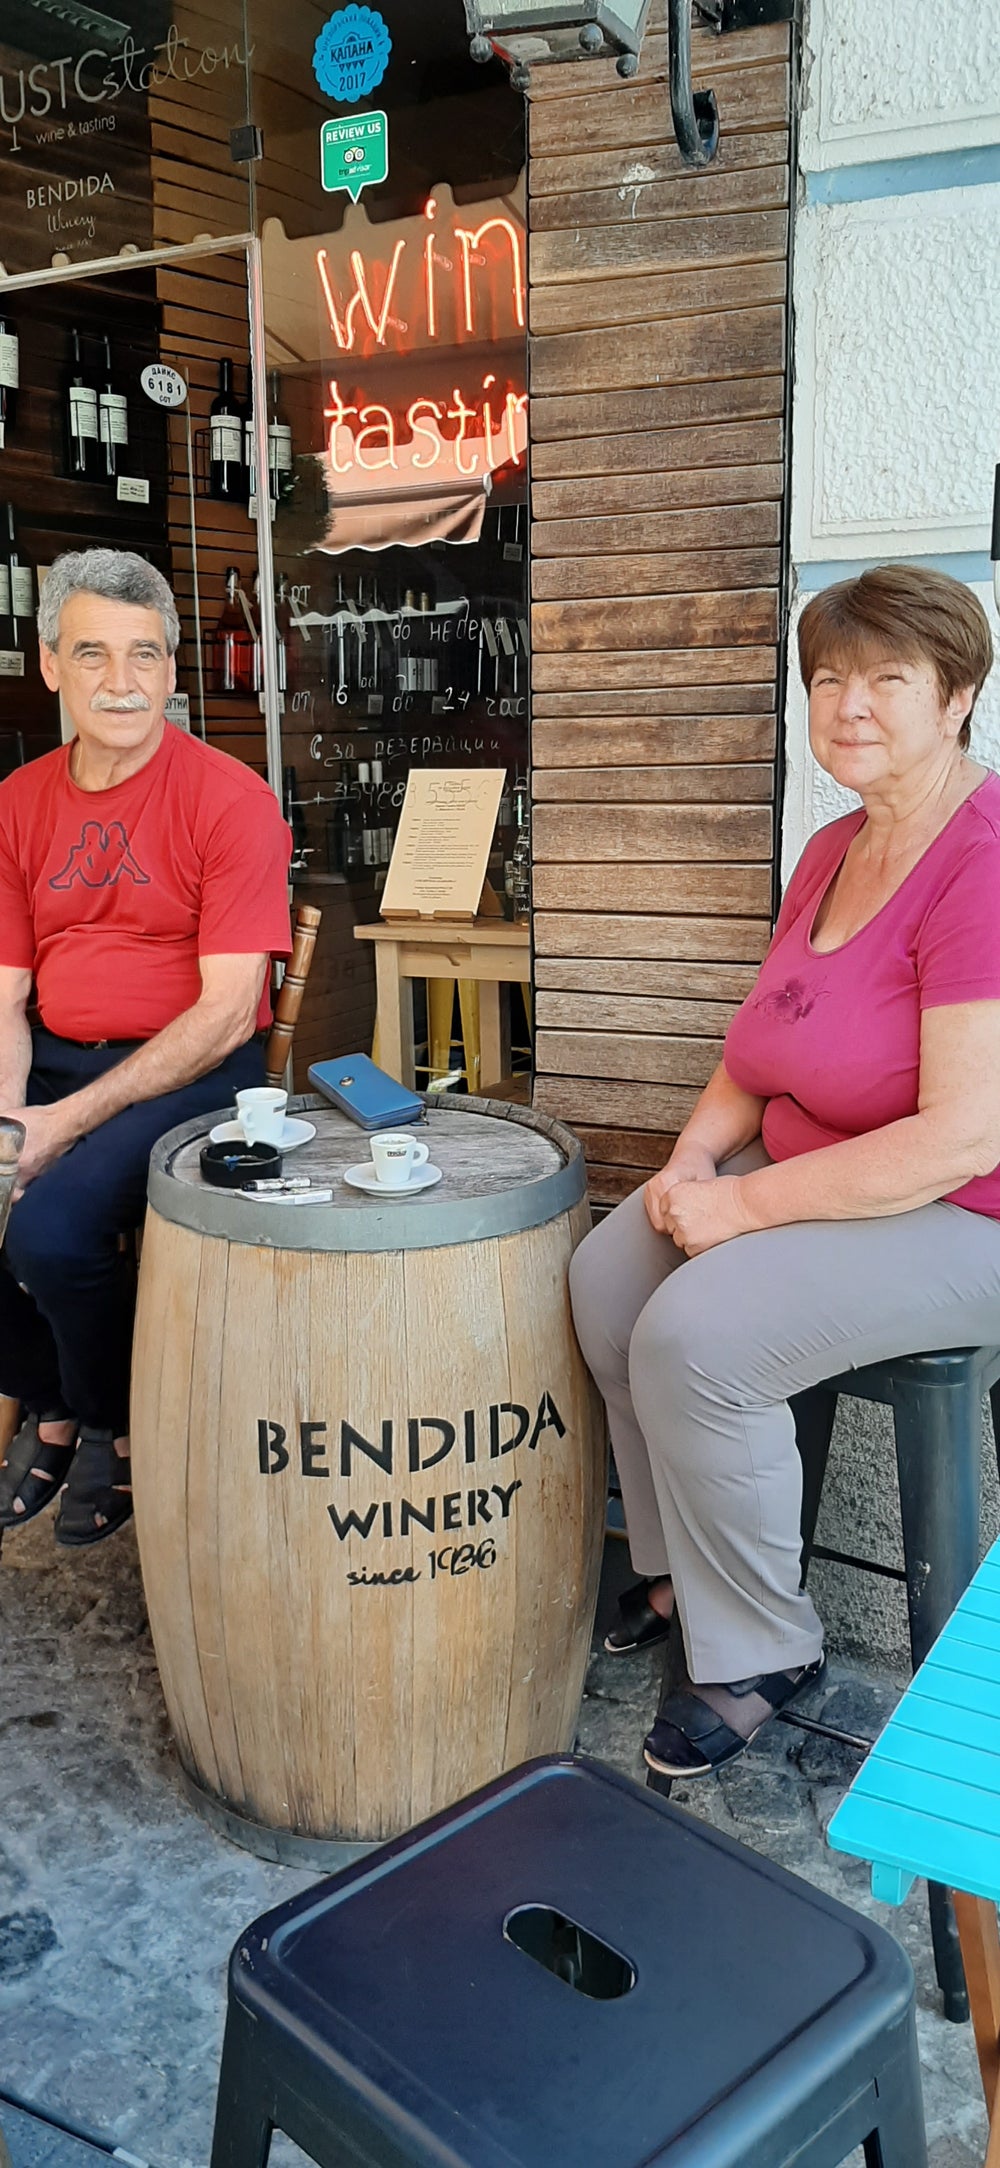 Bendida Shop in Plovdiv, Kapana